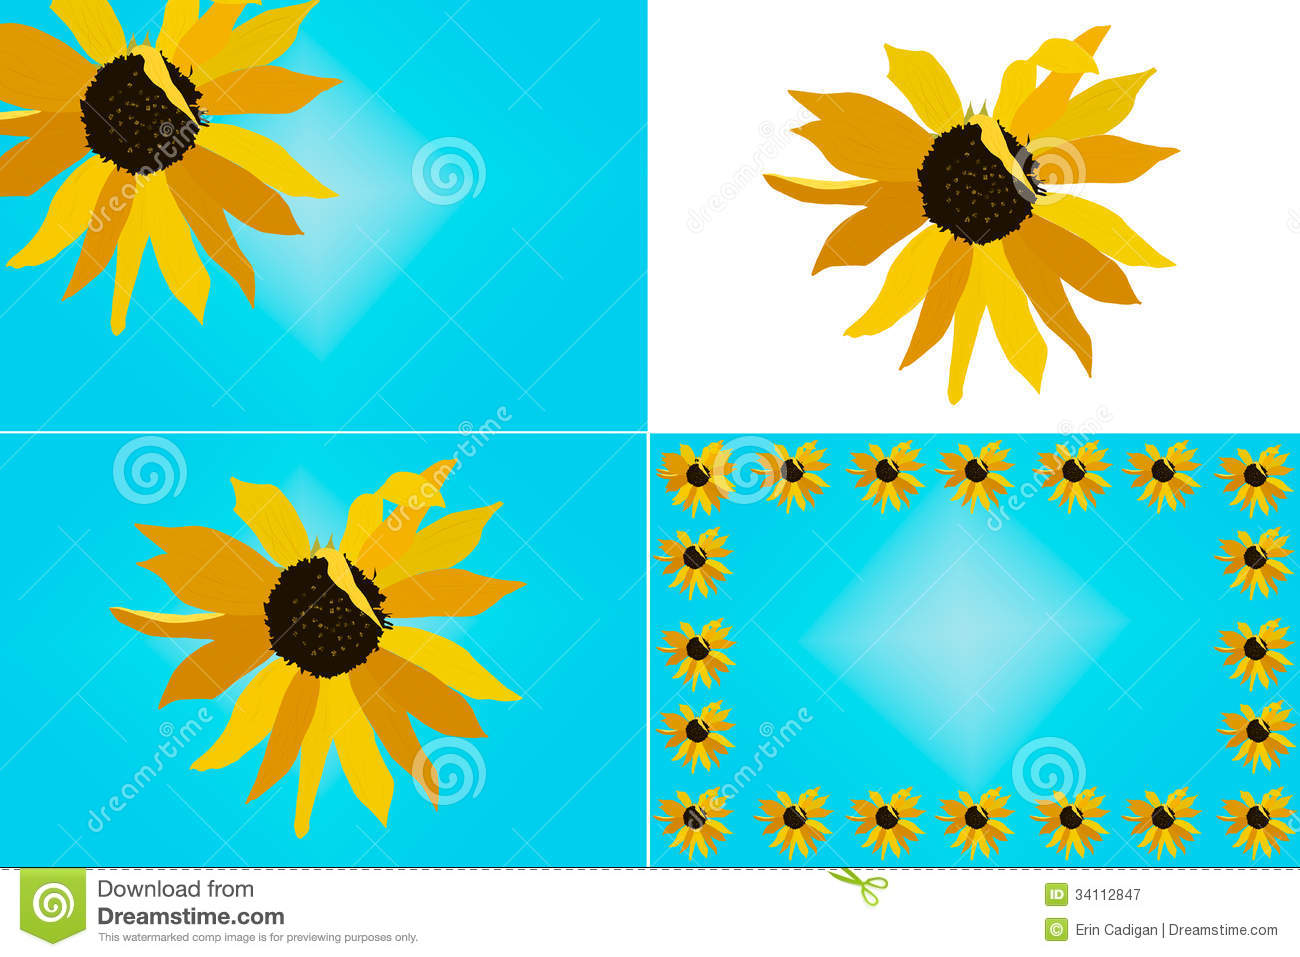 Sunflower Illustration Set Royalty Free Stock Photography   Image